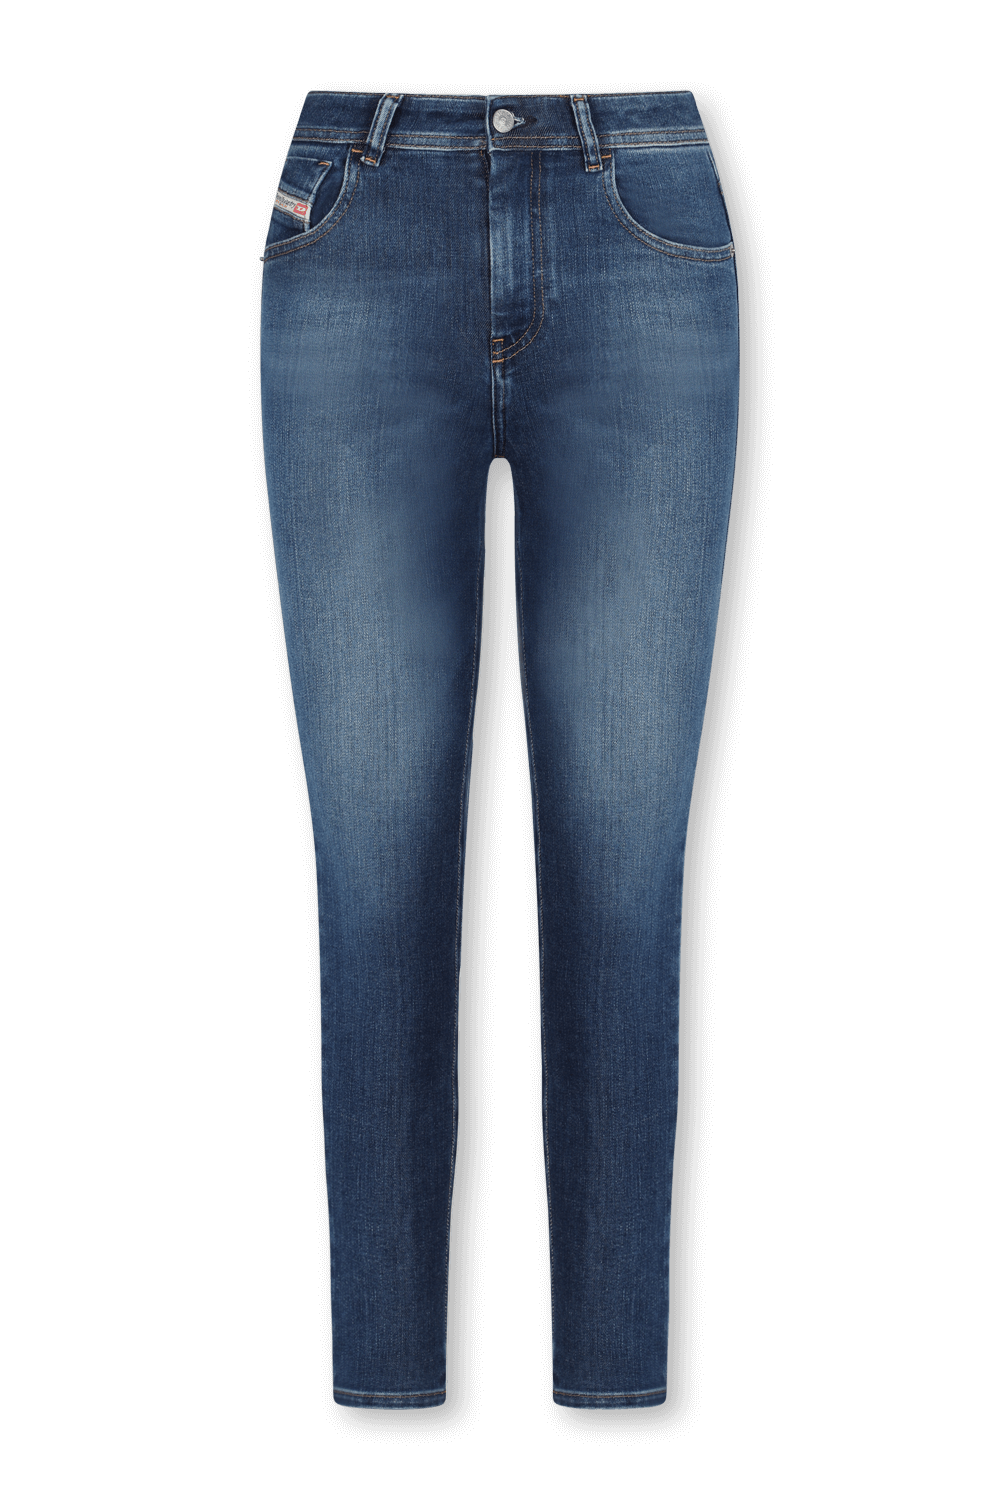 ג'ינס סקיני כחול משופשף בגזרה גבוהה DIESEL